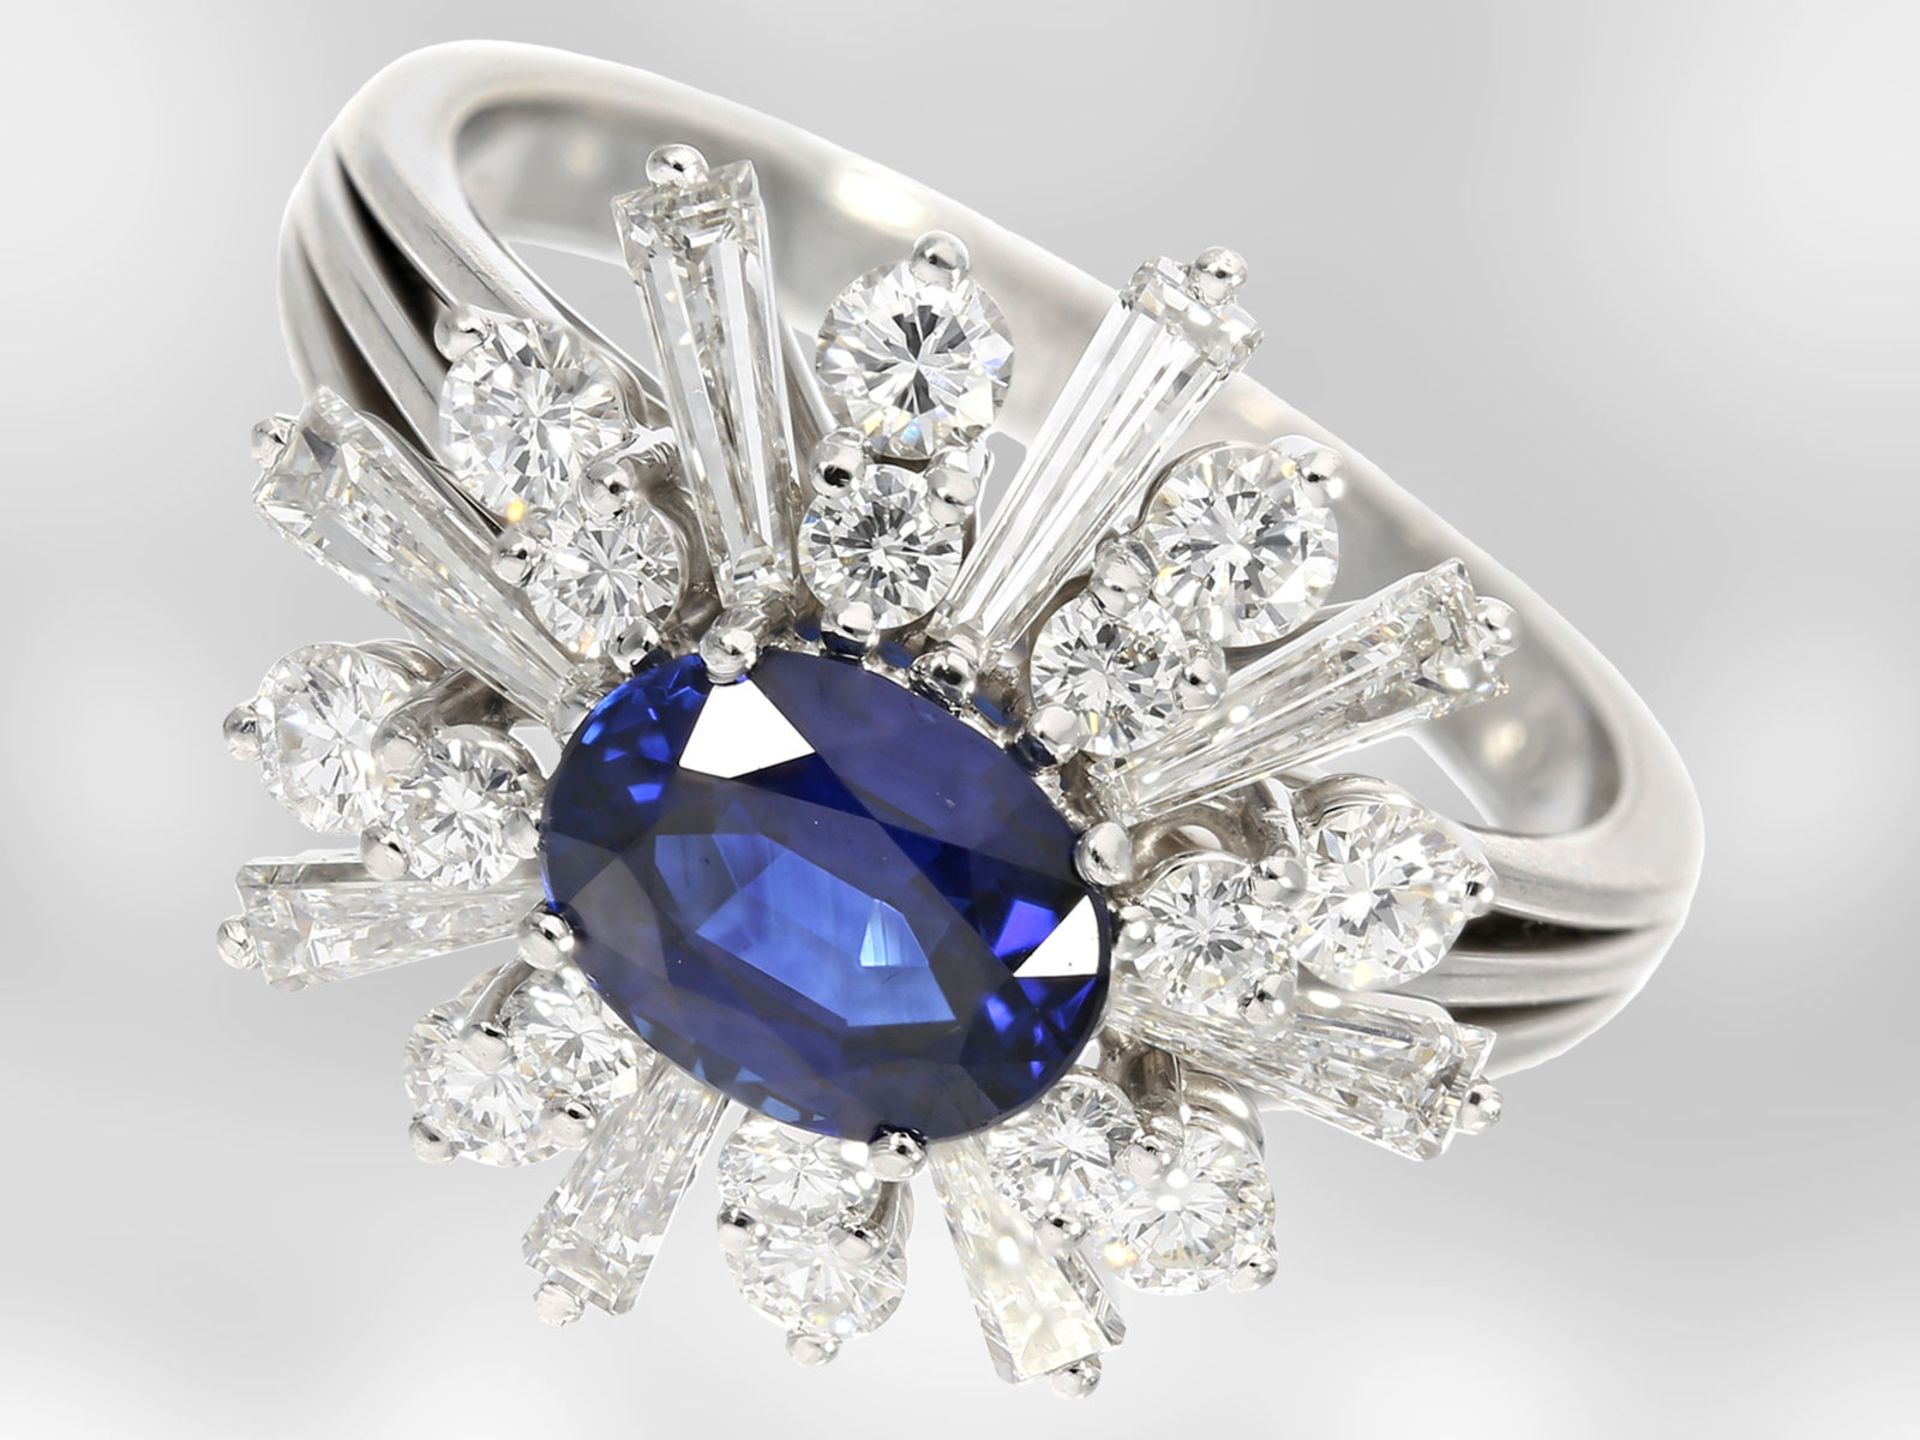 Ring: sehr attraktiver vintage Saphir-/Diamantring, insgesamt ca. 2,75ct, 18K Weißgold, Handarbeit H